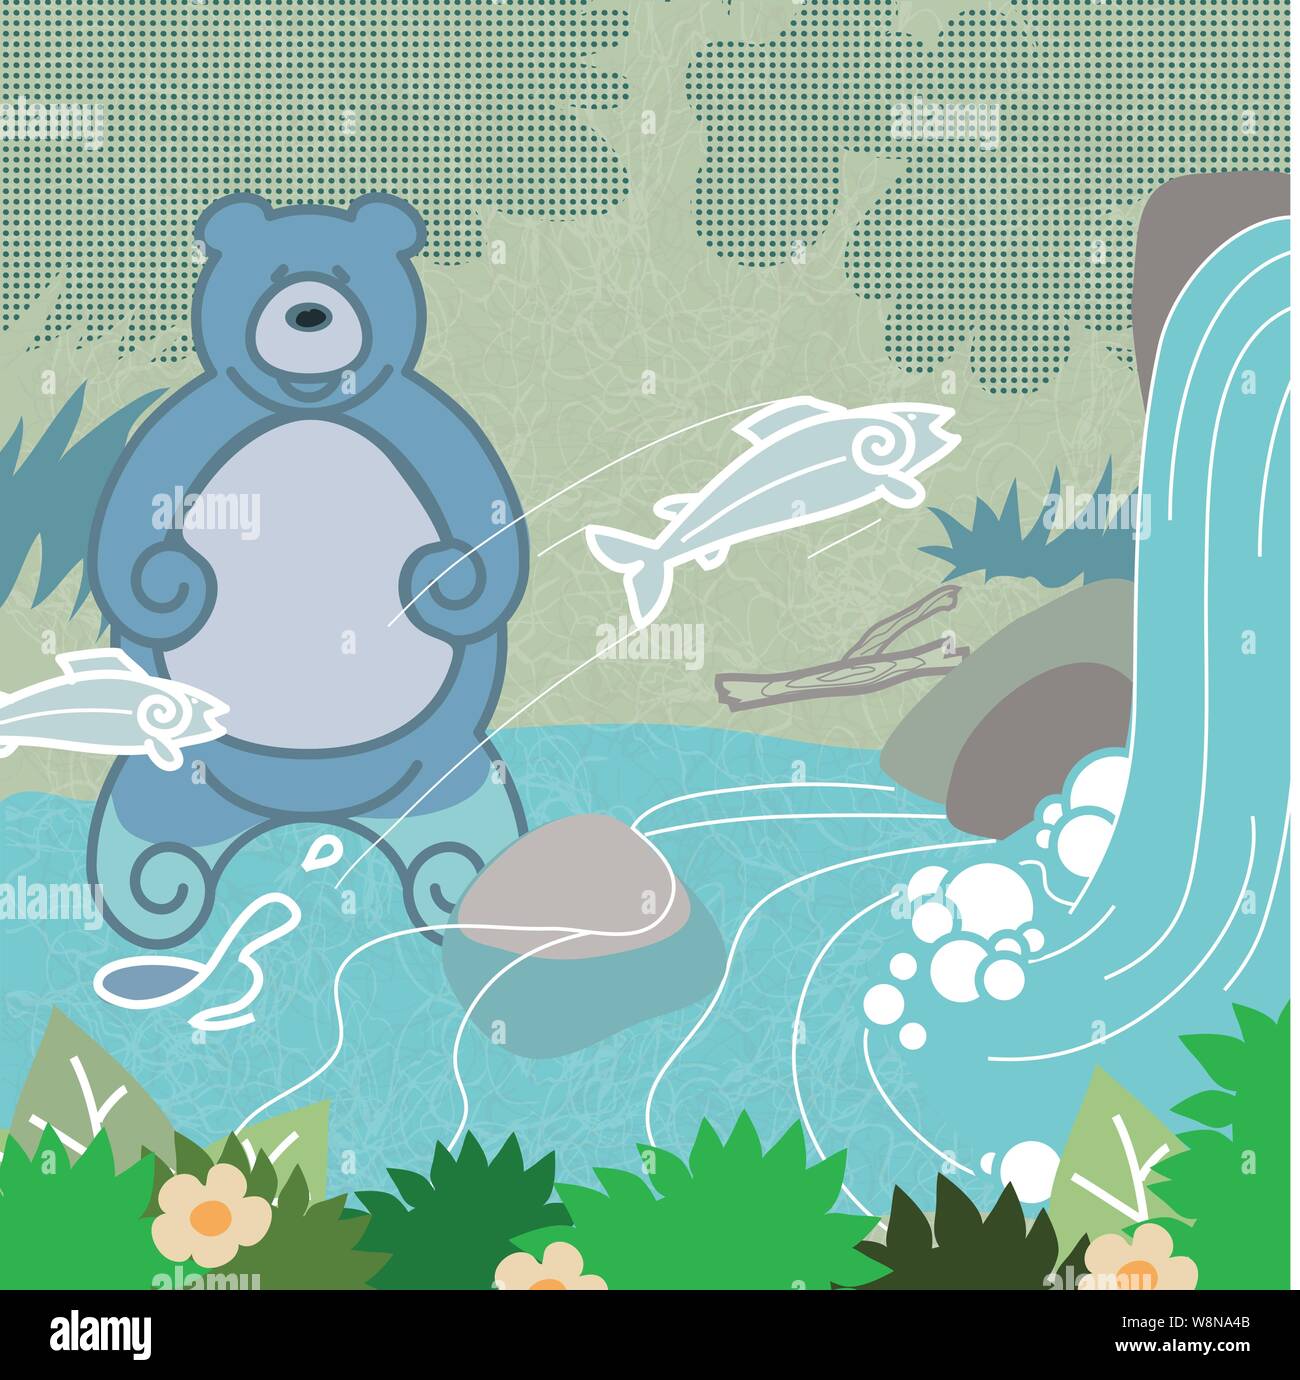 Un dessin animé de la pêche ours ours brun la pêche du saumon dans une rivière avec une chute d'eau Illustration de Vecteur